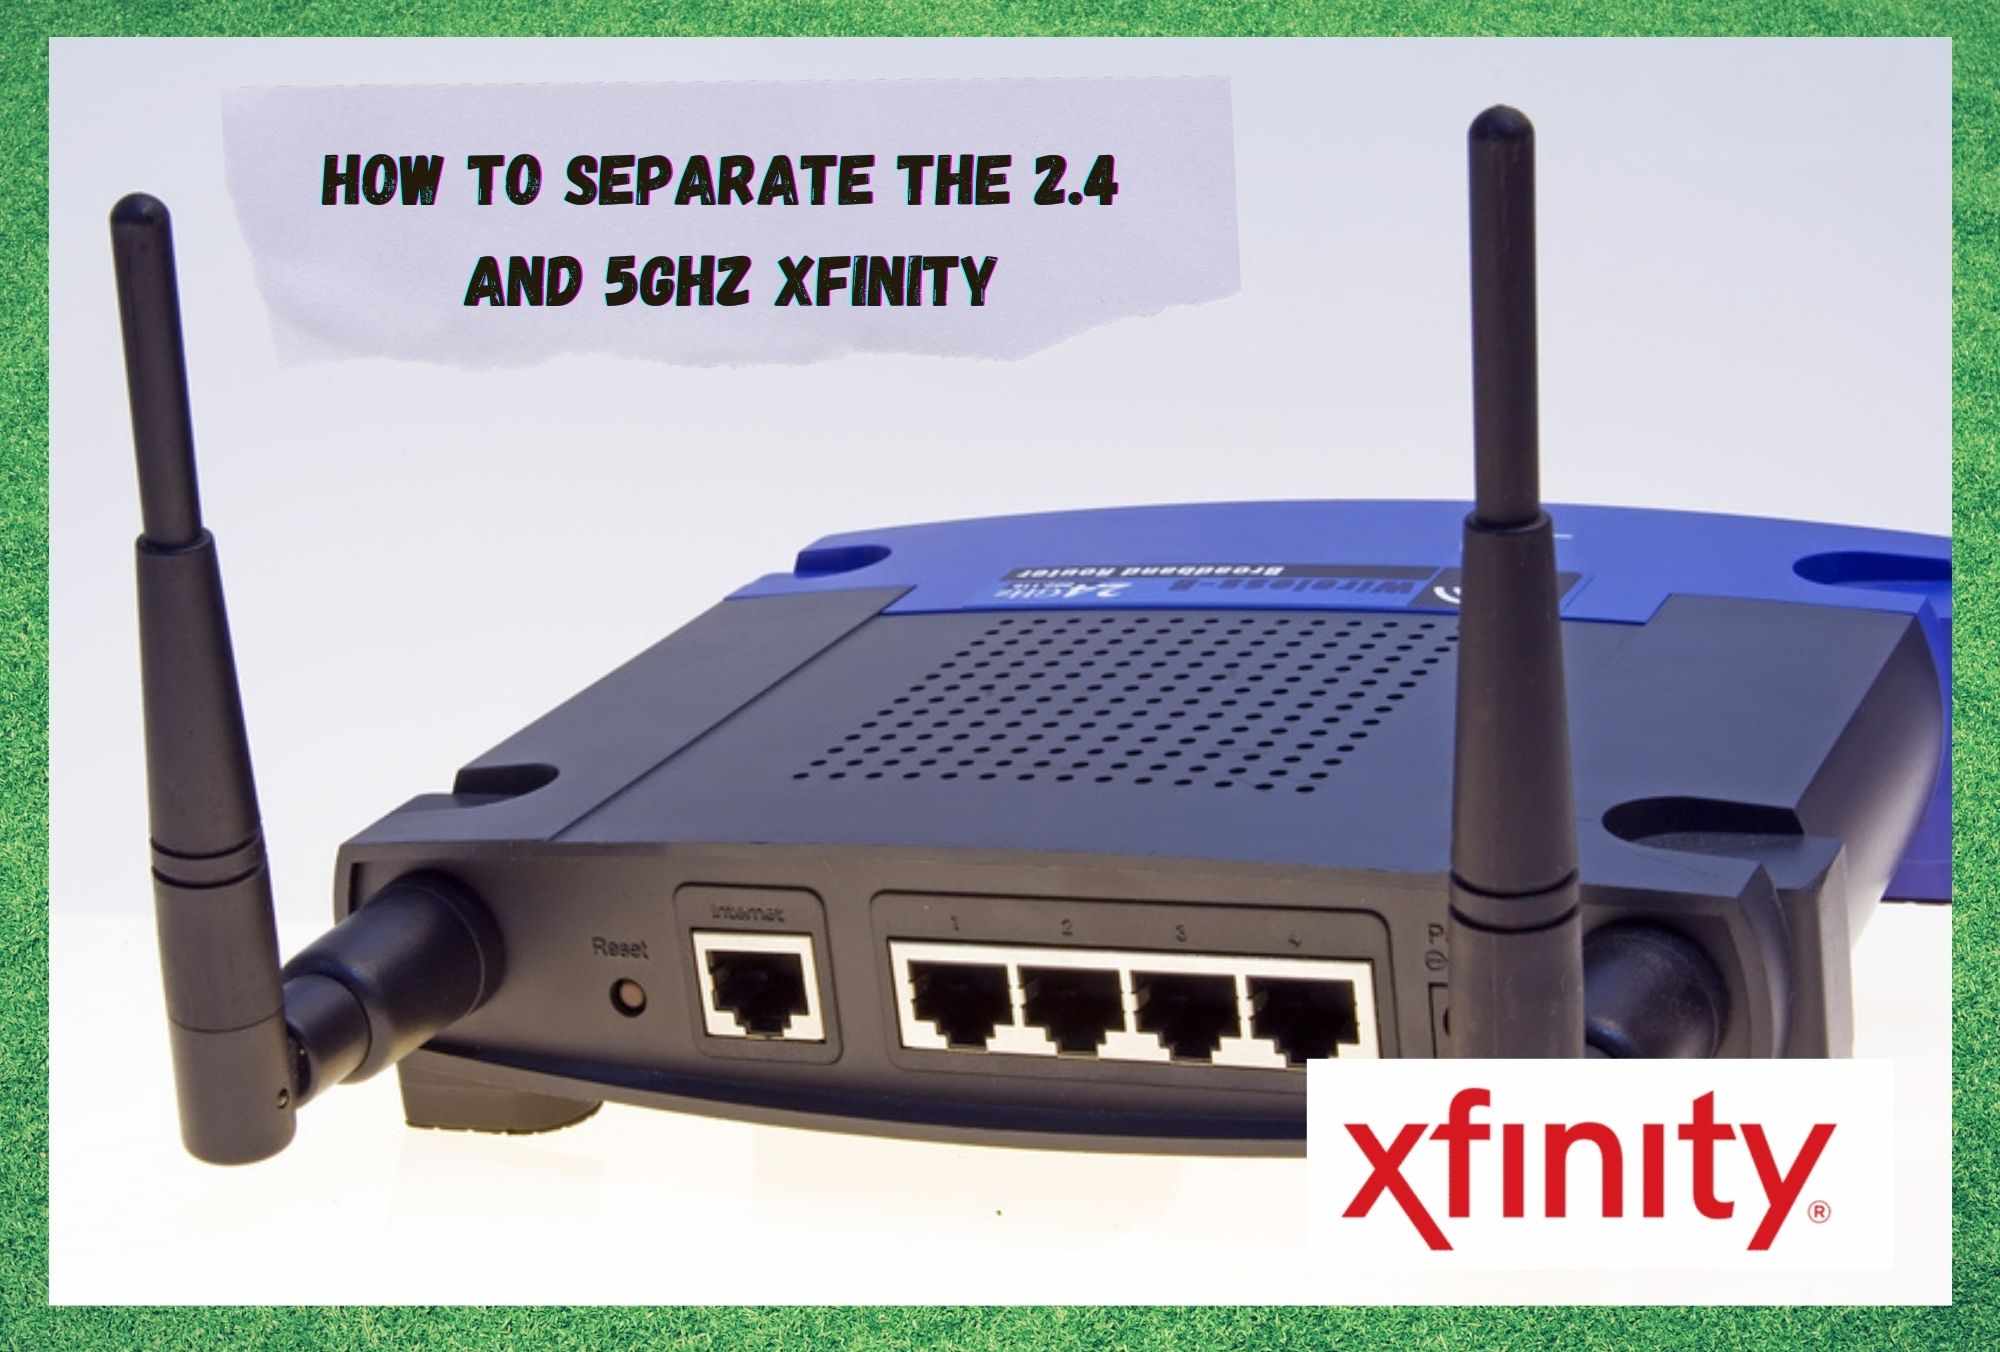 2.4GHz와 5GHz Xfinity를 분리하는 방법은 무엇입니까?